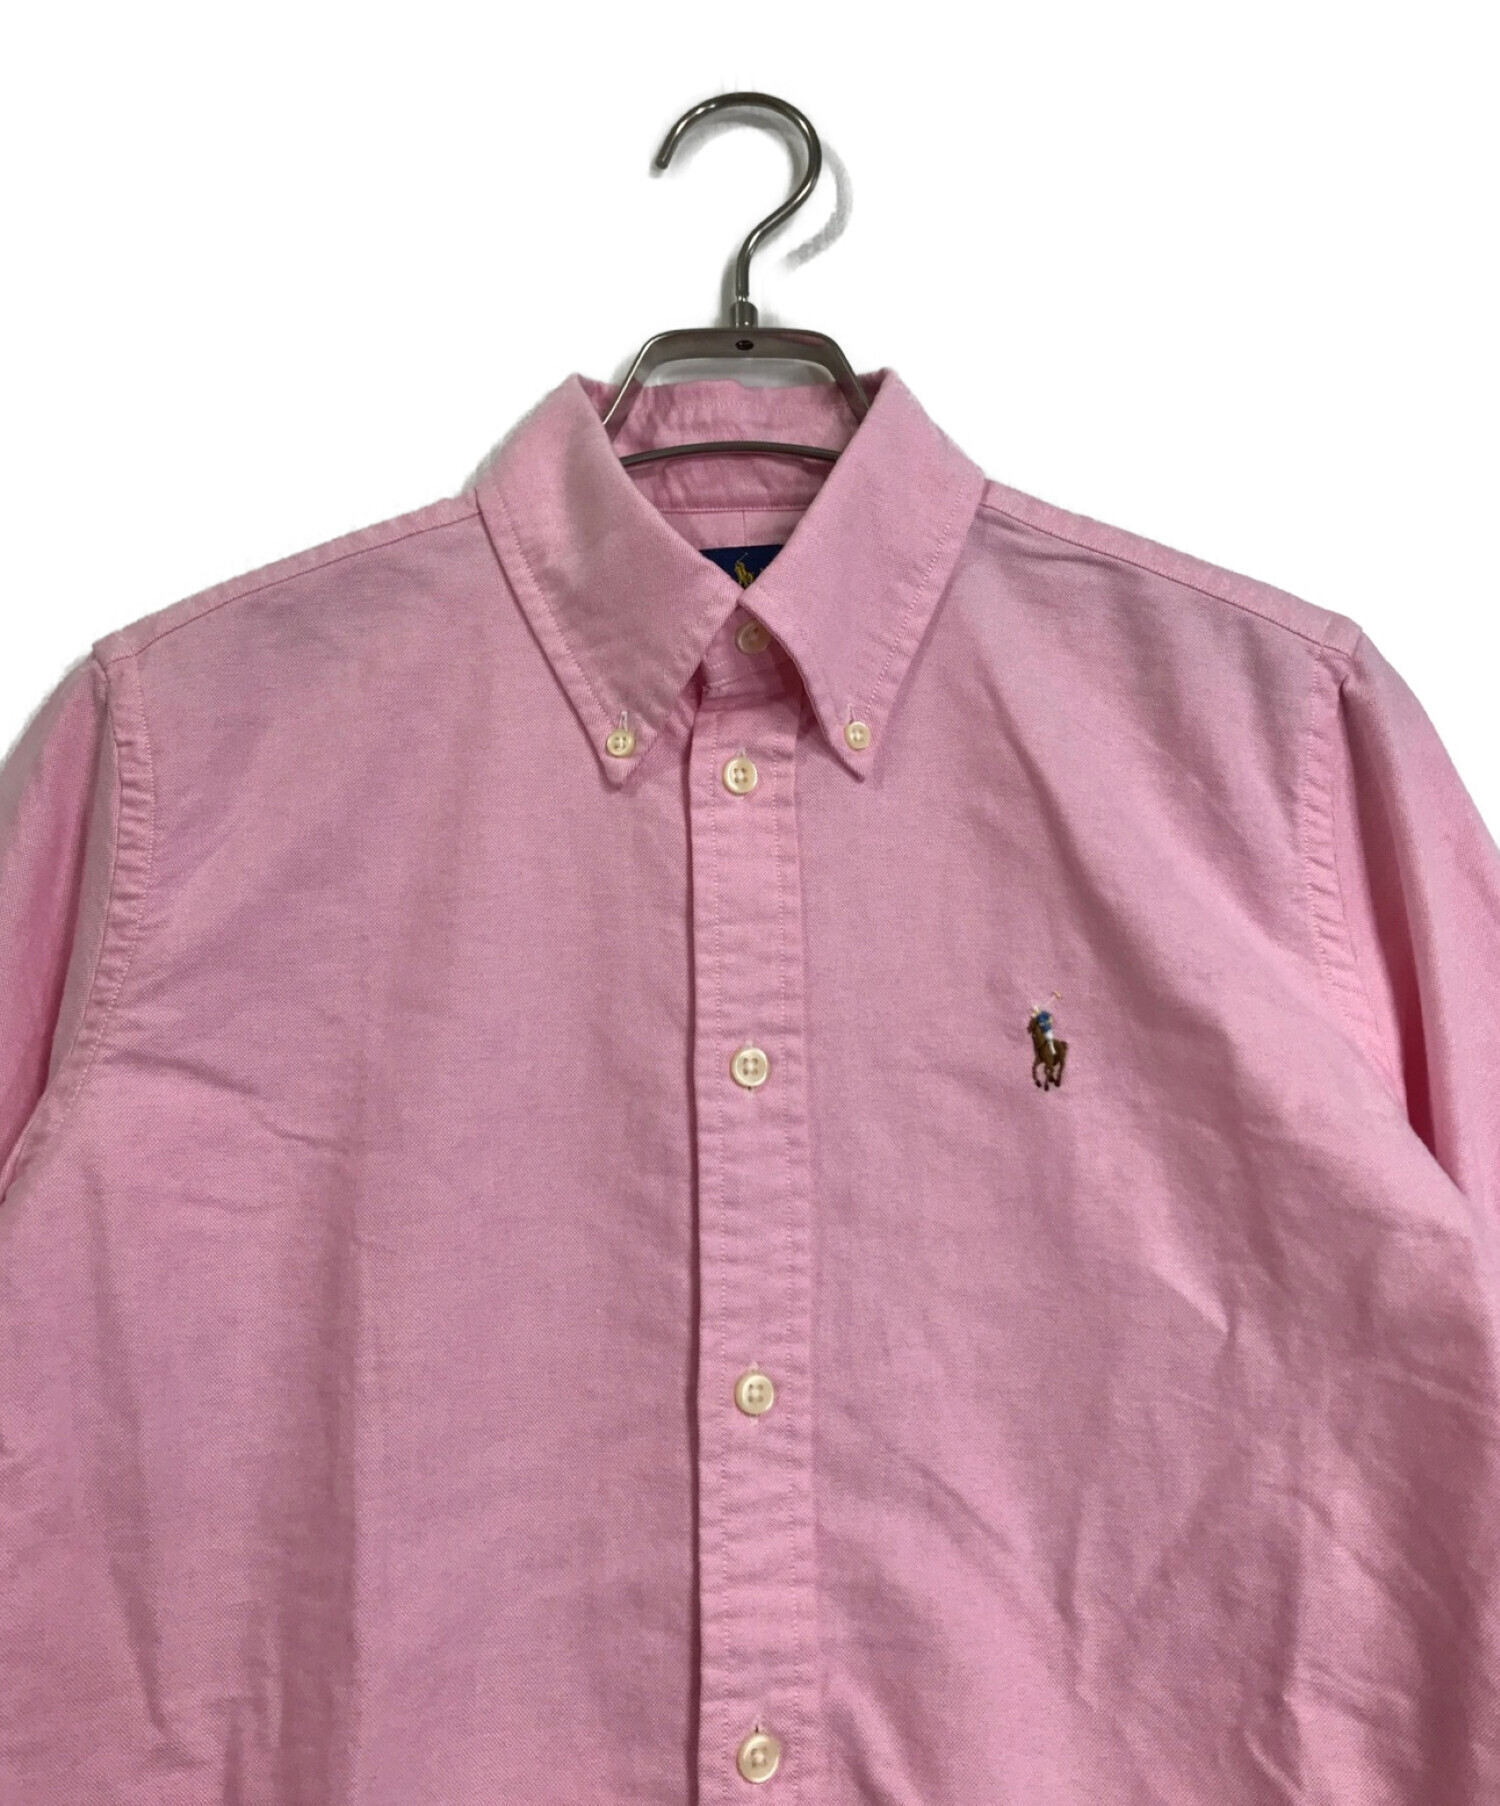 RALPH LAUREN (ラルフローレン) ボタンダウンシャツ ピンク サイズ:S 未使用品